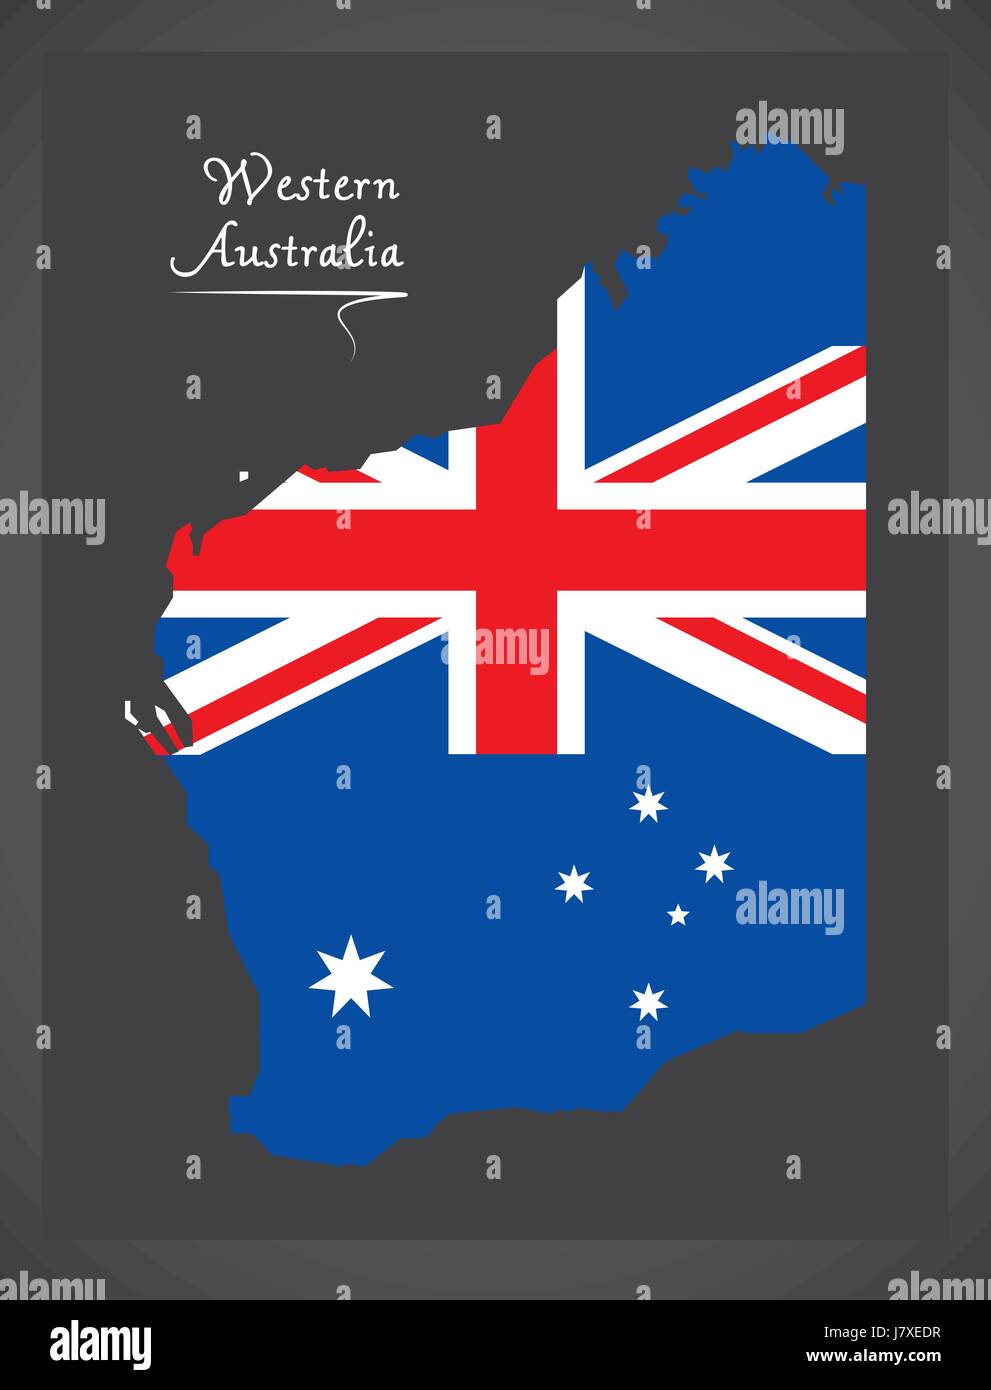 L'ouest de l'australie carte avec drapeau national australien illustration Illustration de Vecteur